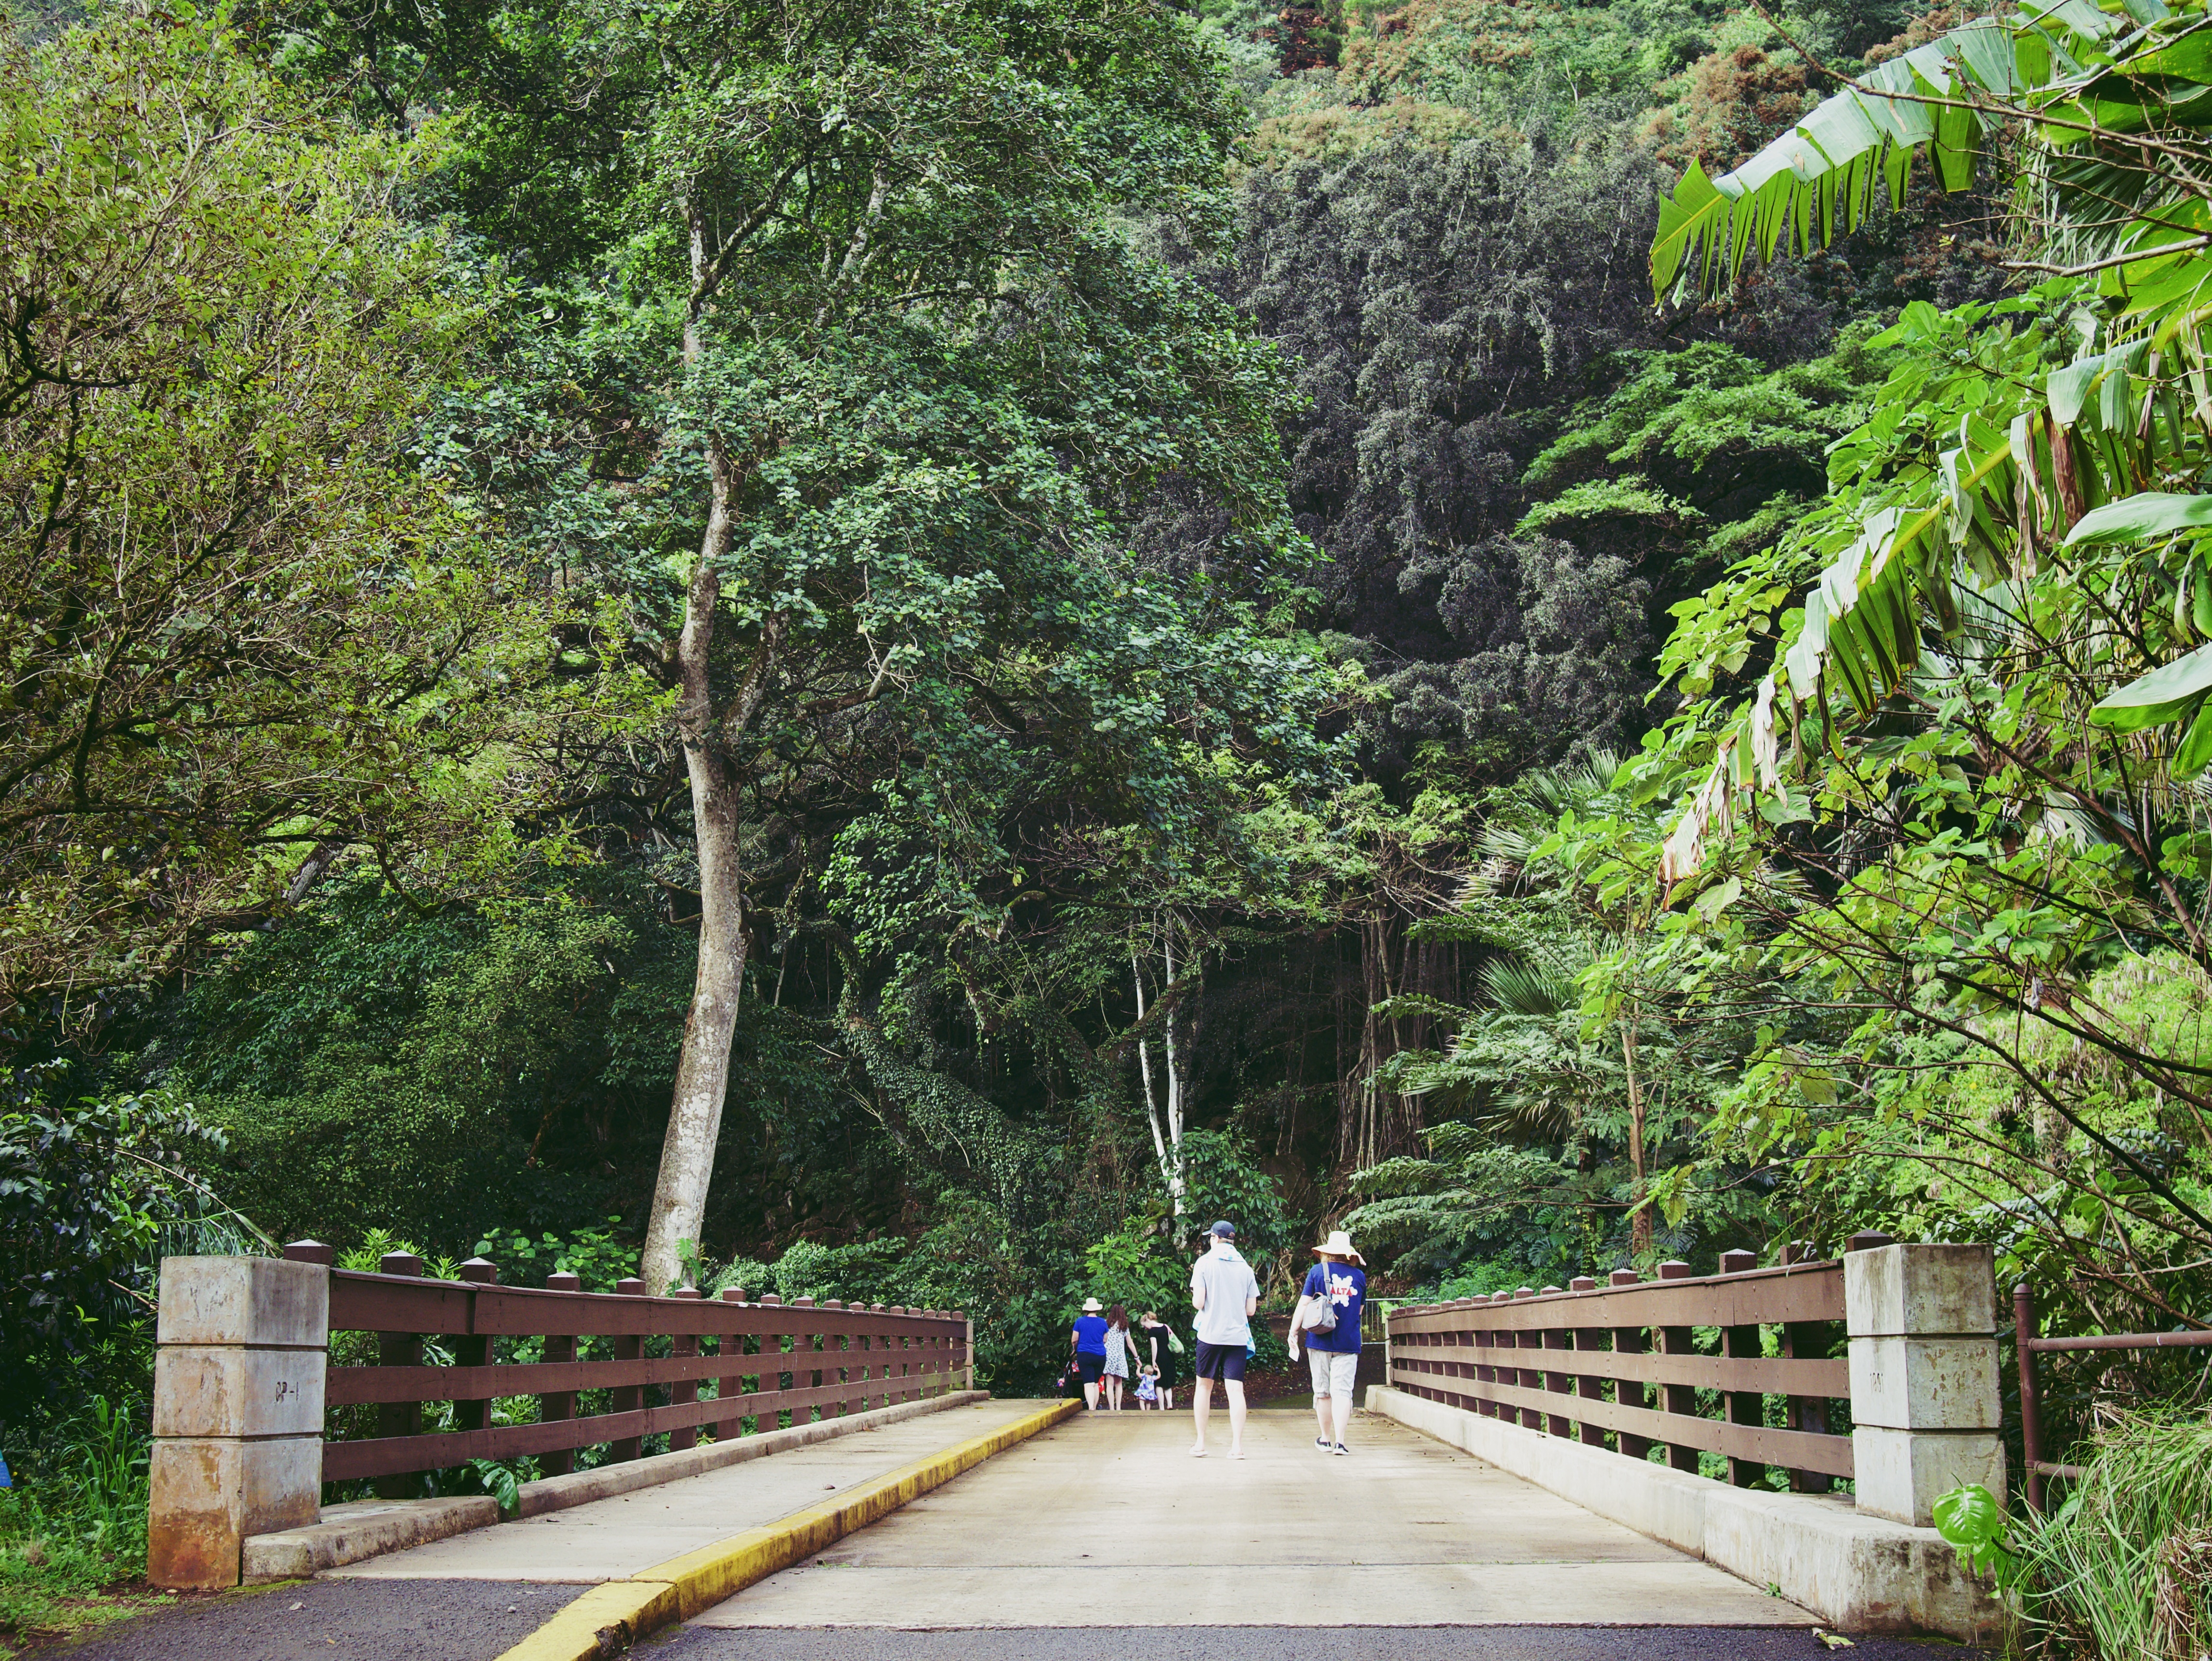 People crossing a bridge in Waimea Valley